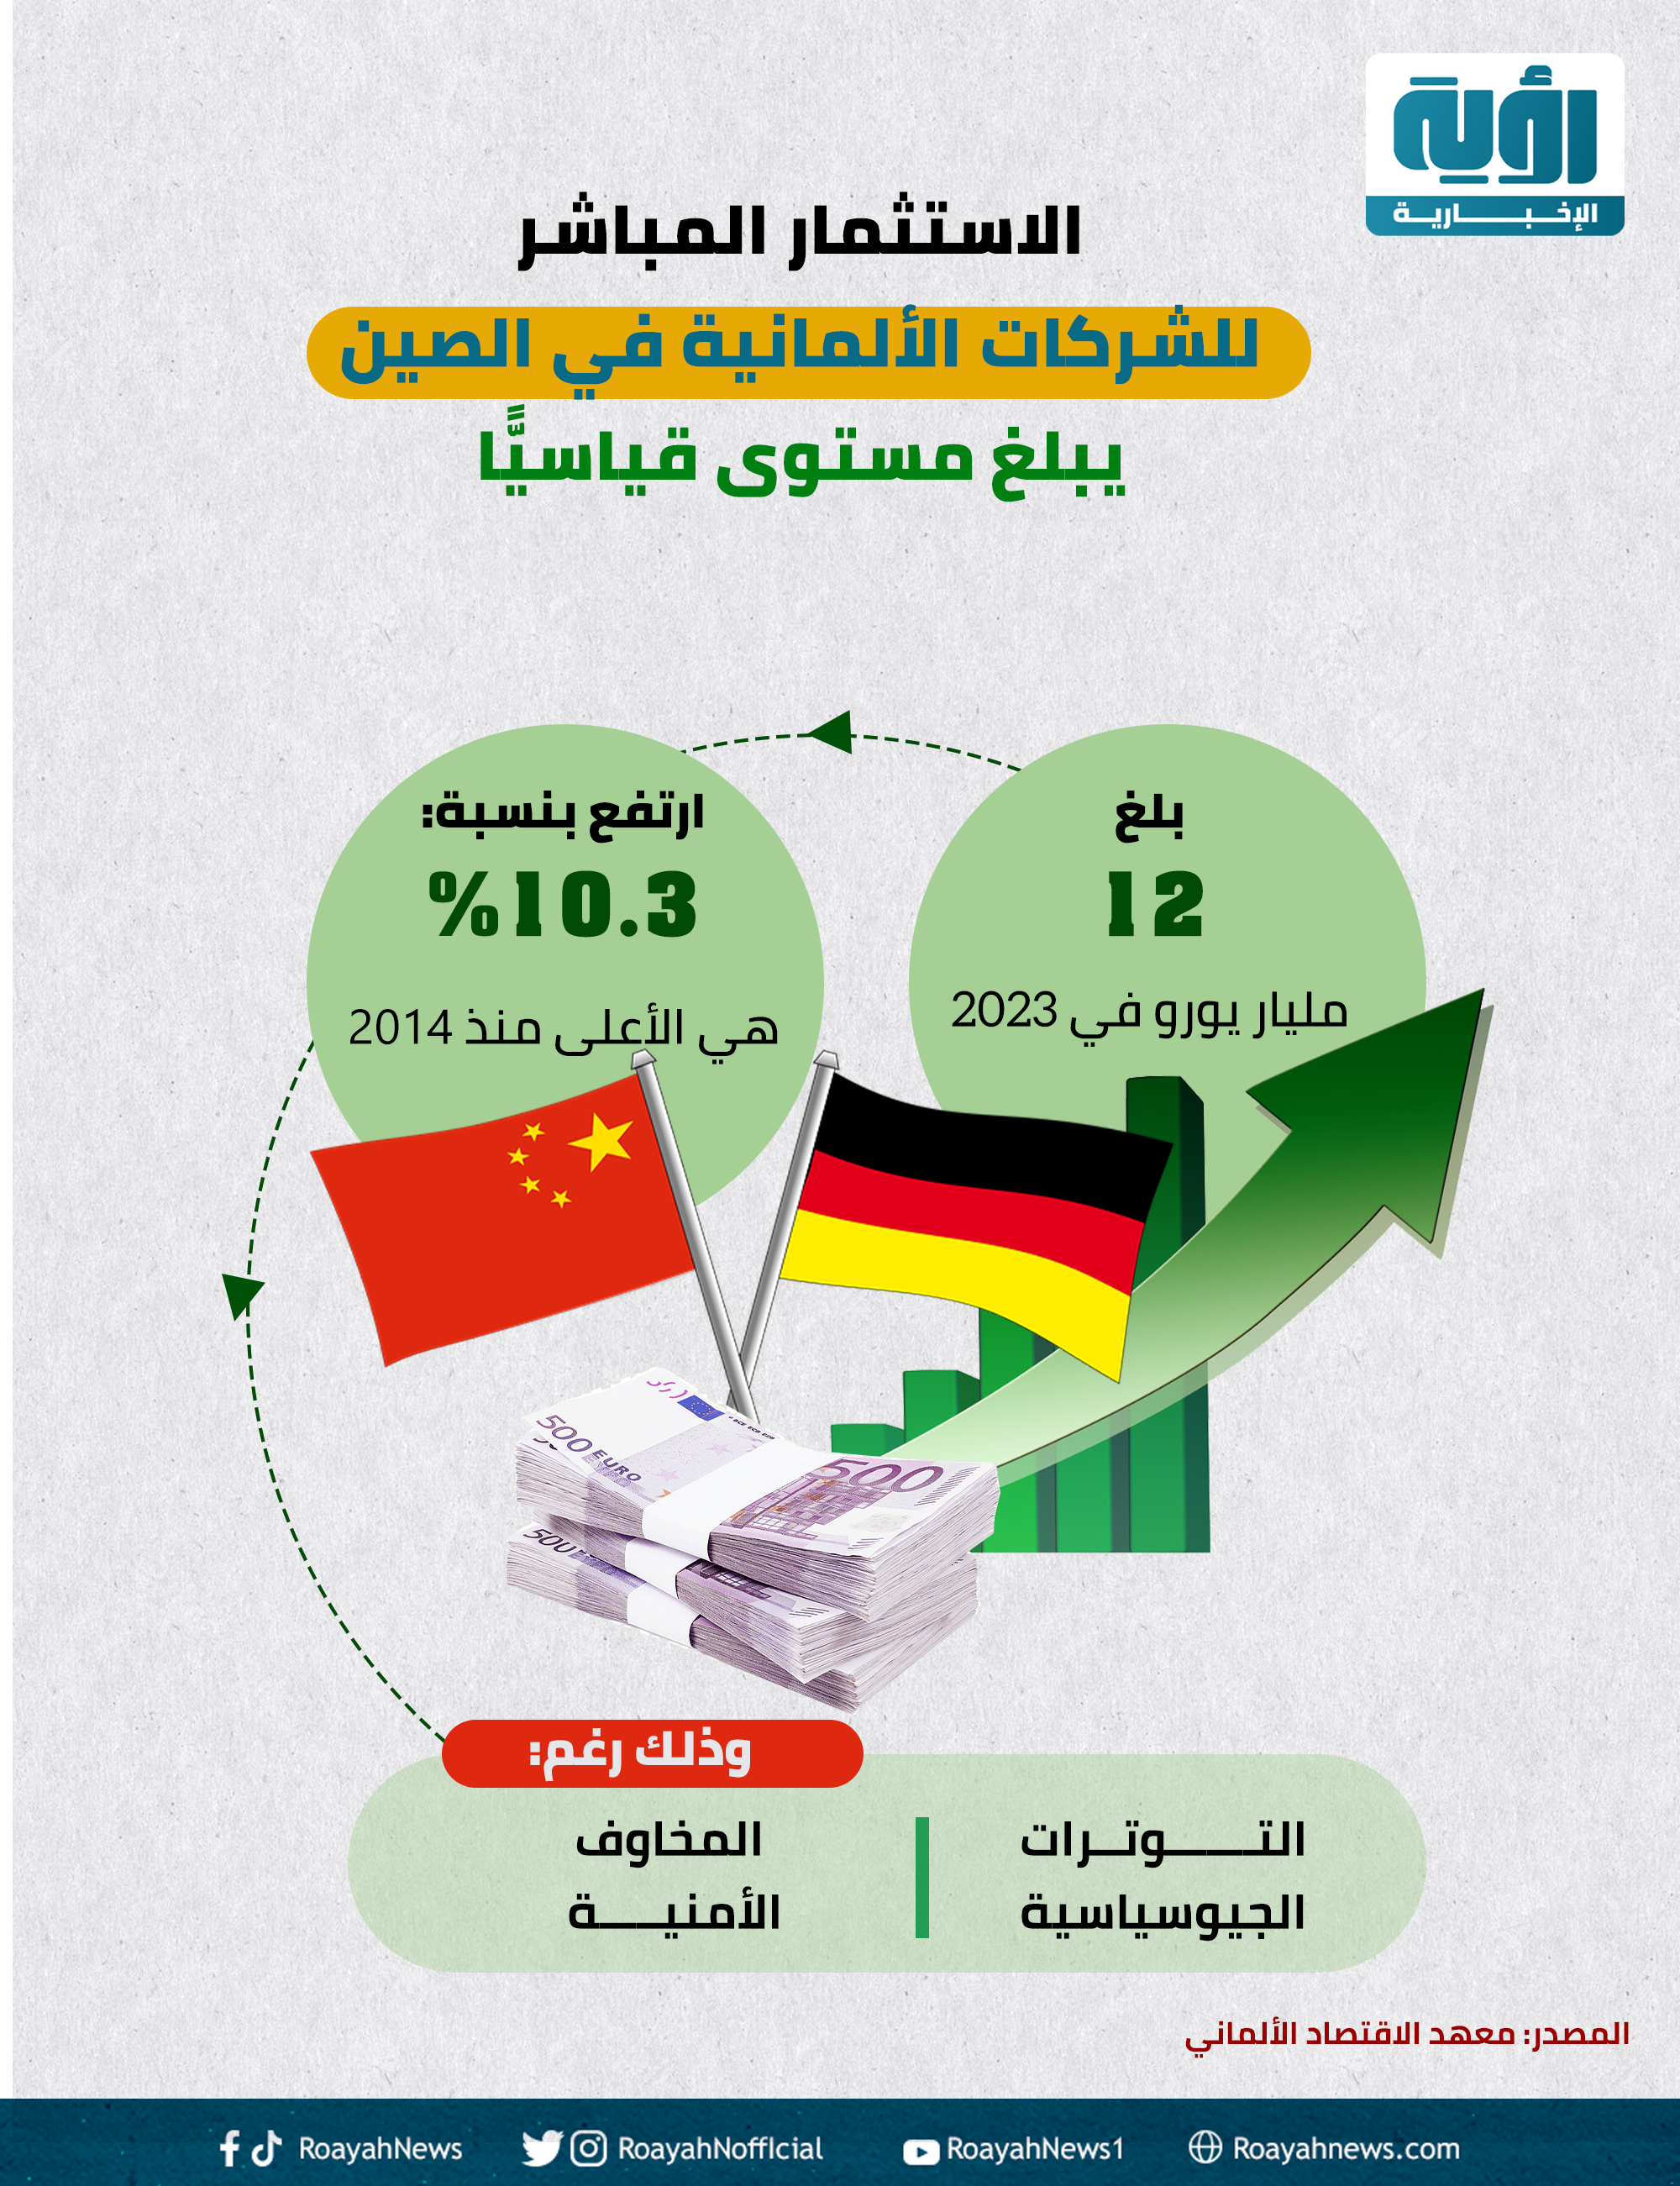 الاستثمار المباشر للشركات الألمانية في الصين يبلغ مستوى قياسيًّا